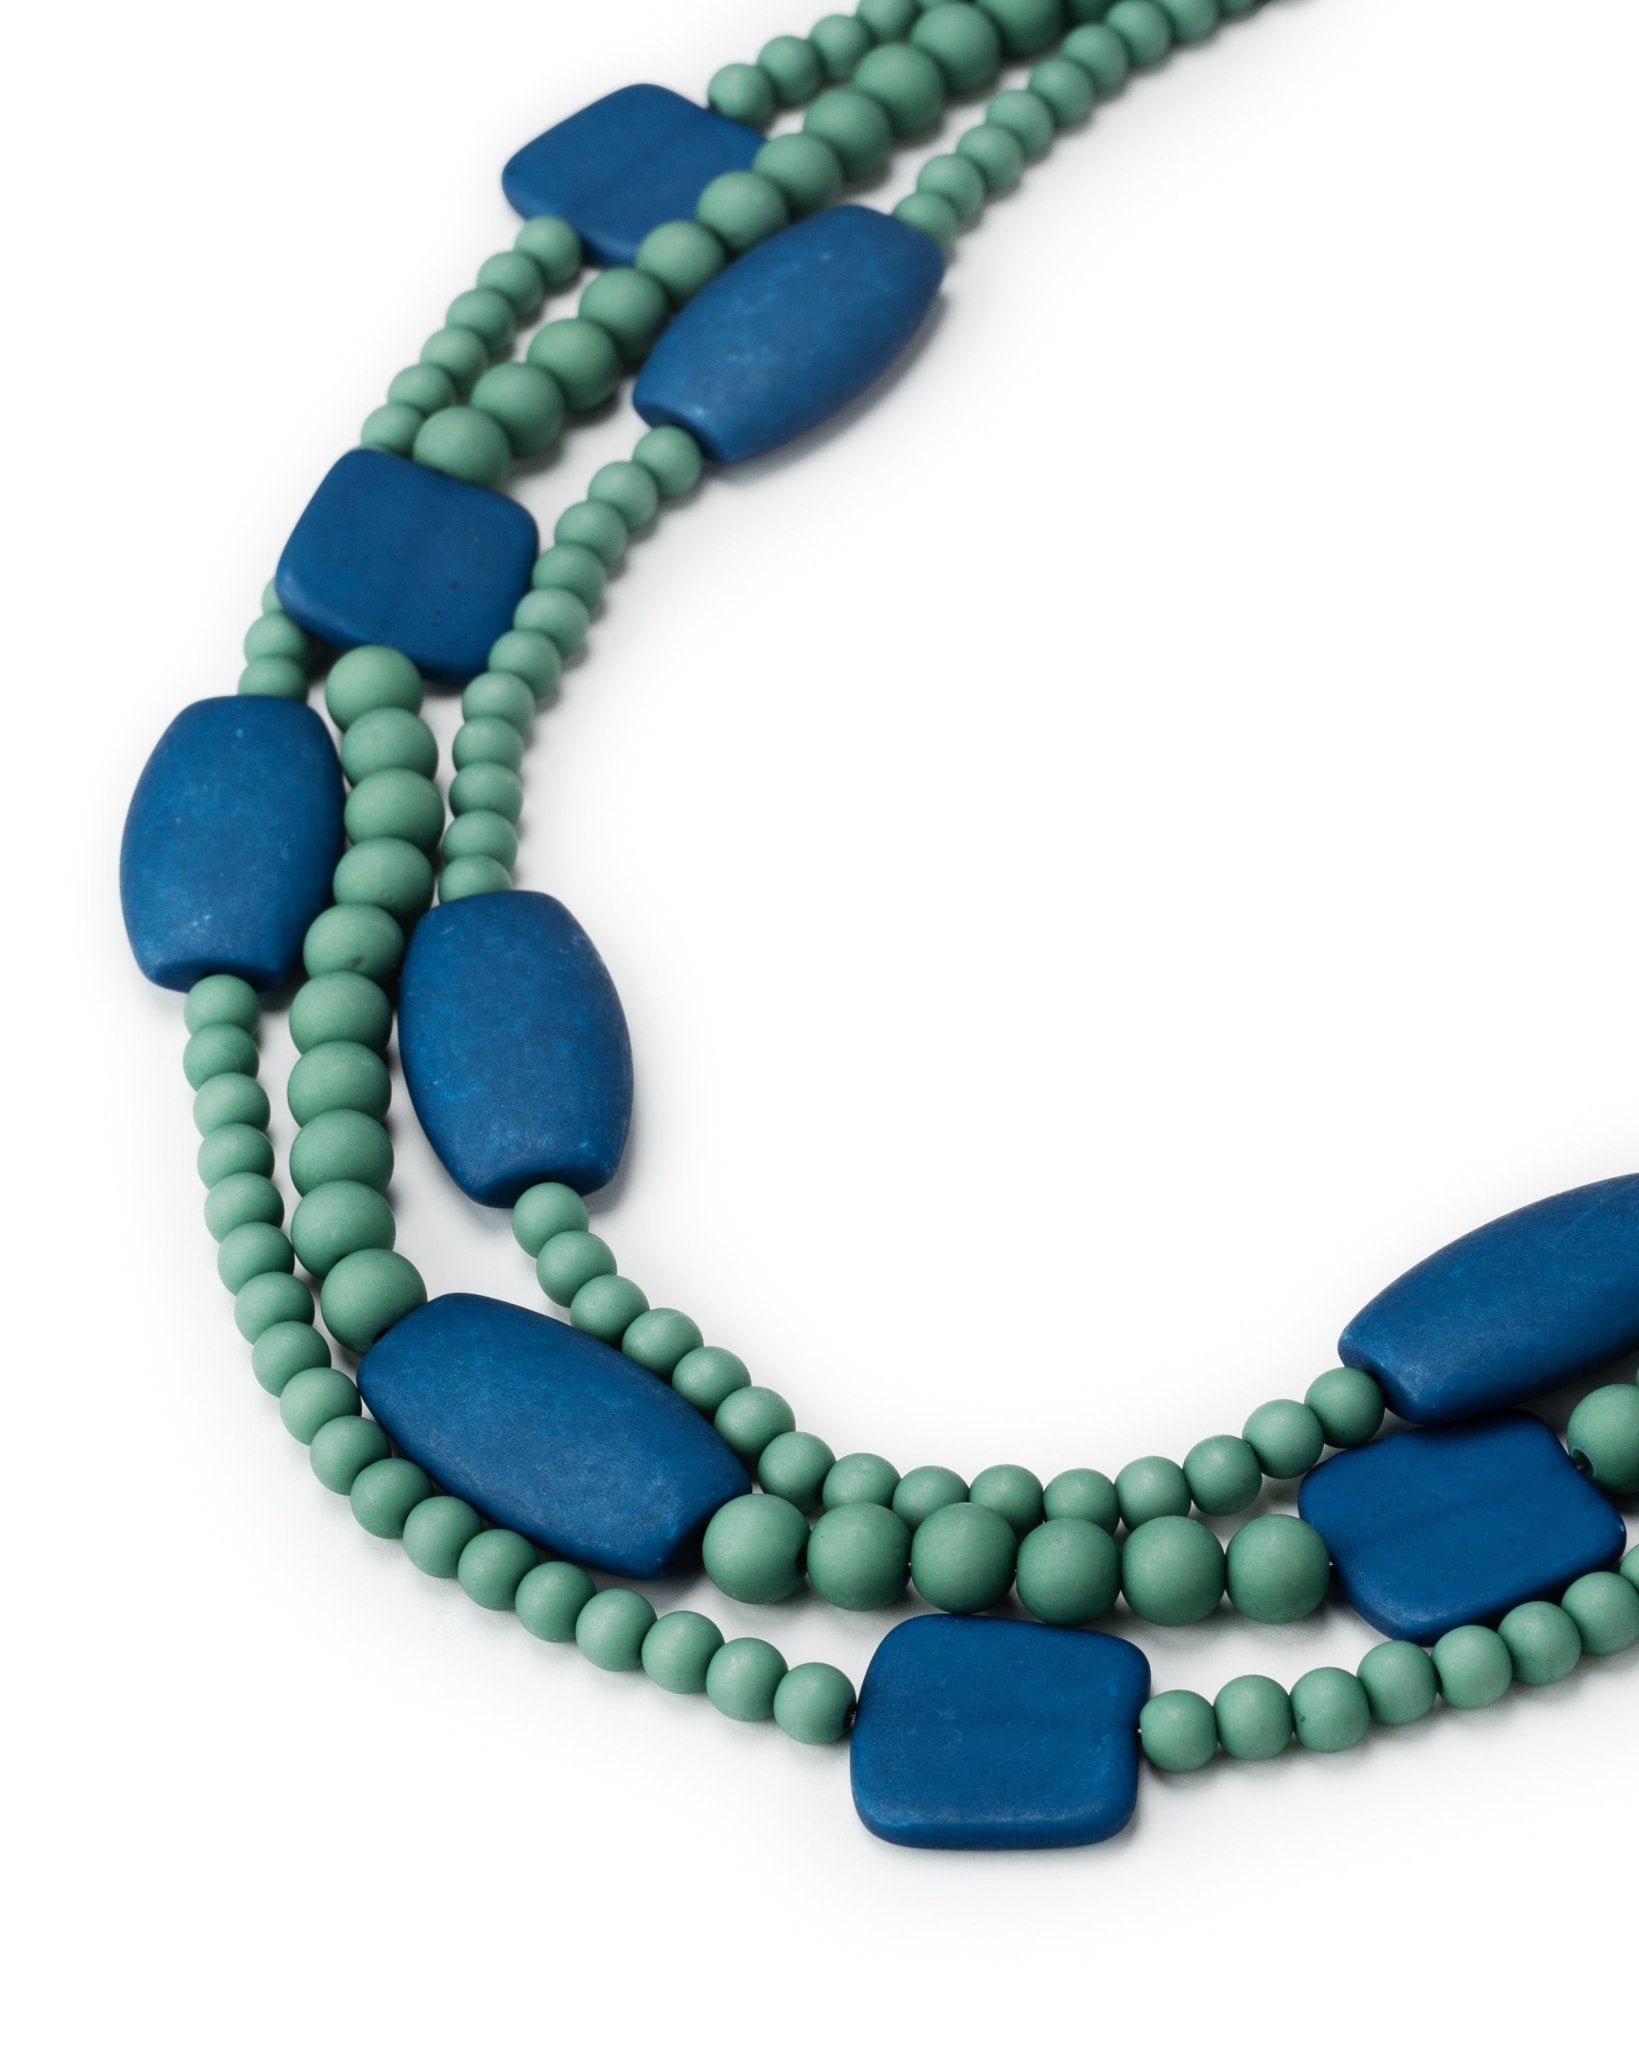 collana-multifili-acrilico-verde-blu-2-Mya Accessories